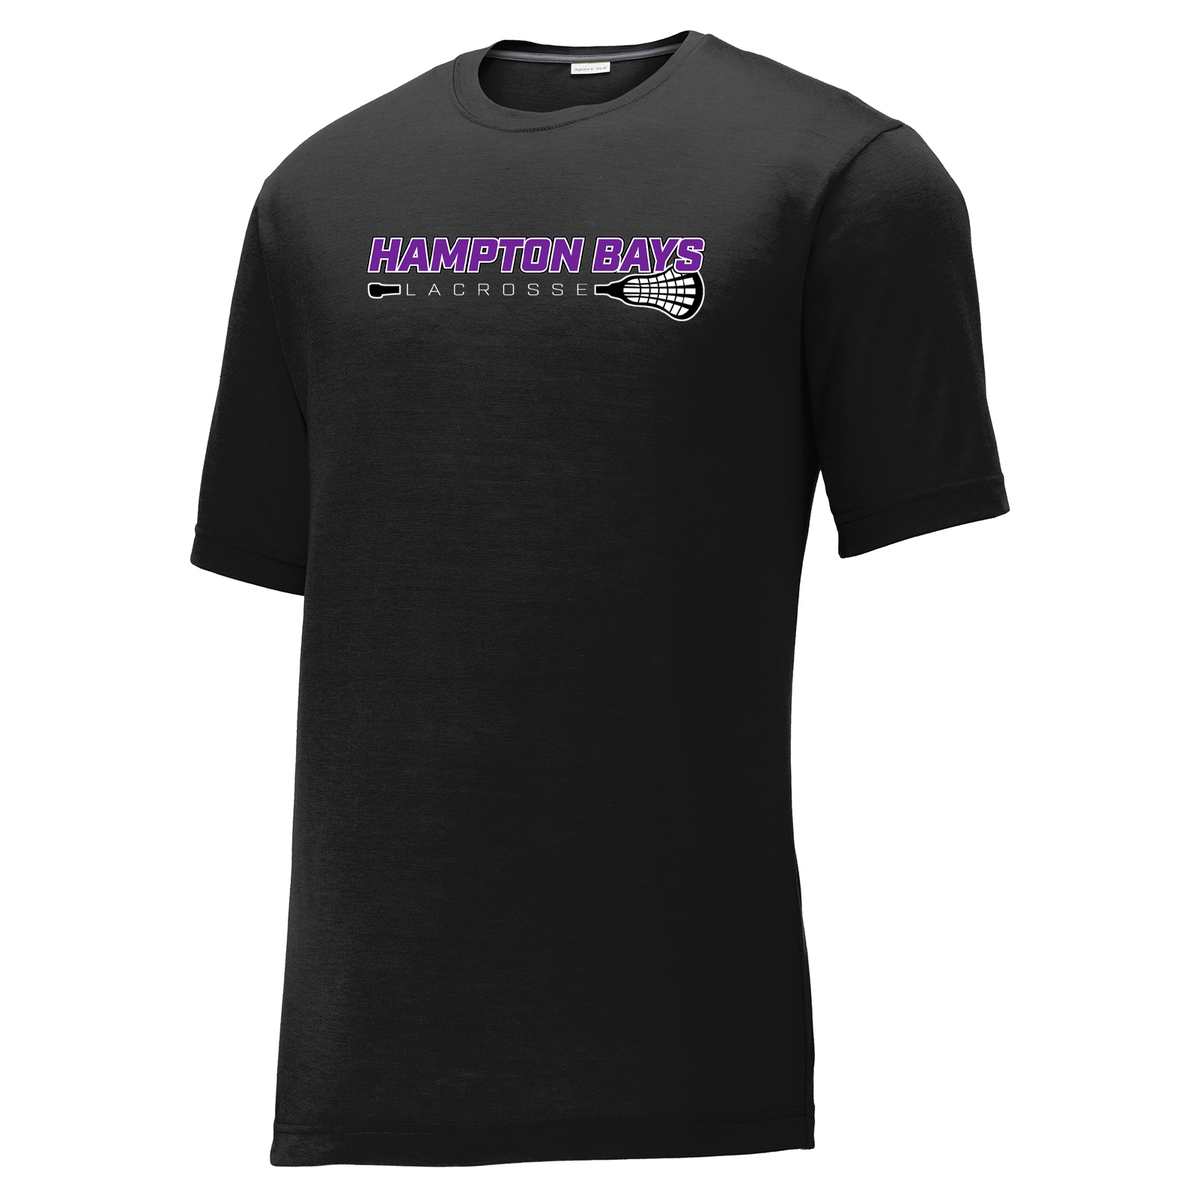 Hampton Bays Lacrosse CottonTouch Performance T-Shirt